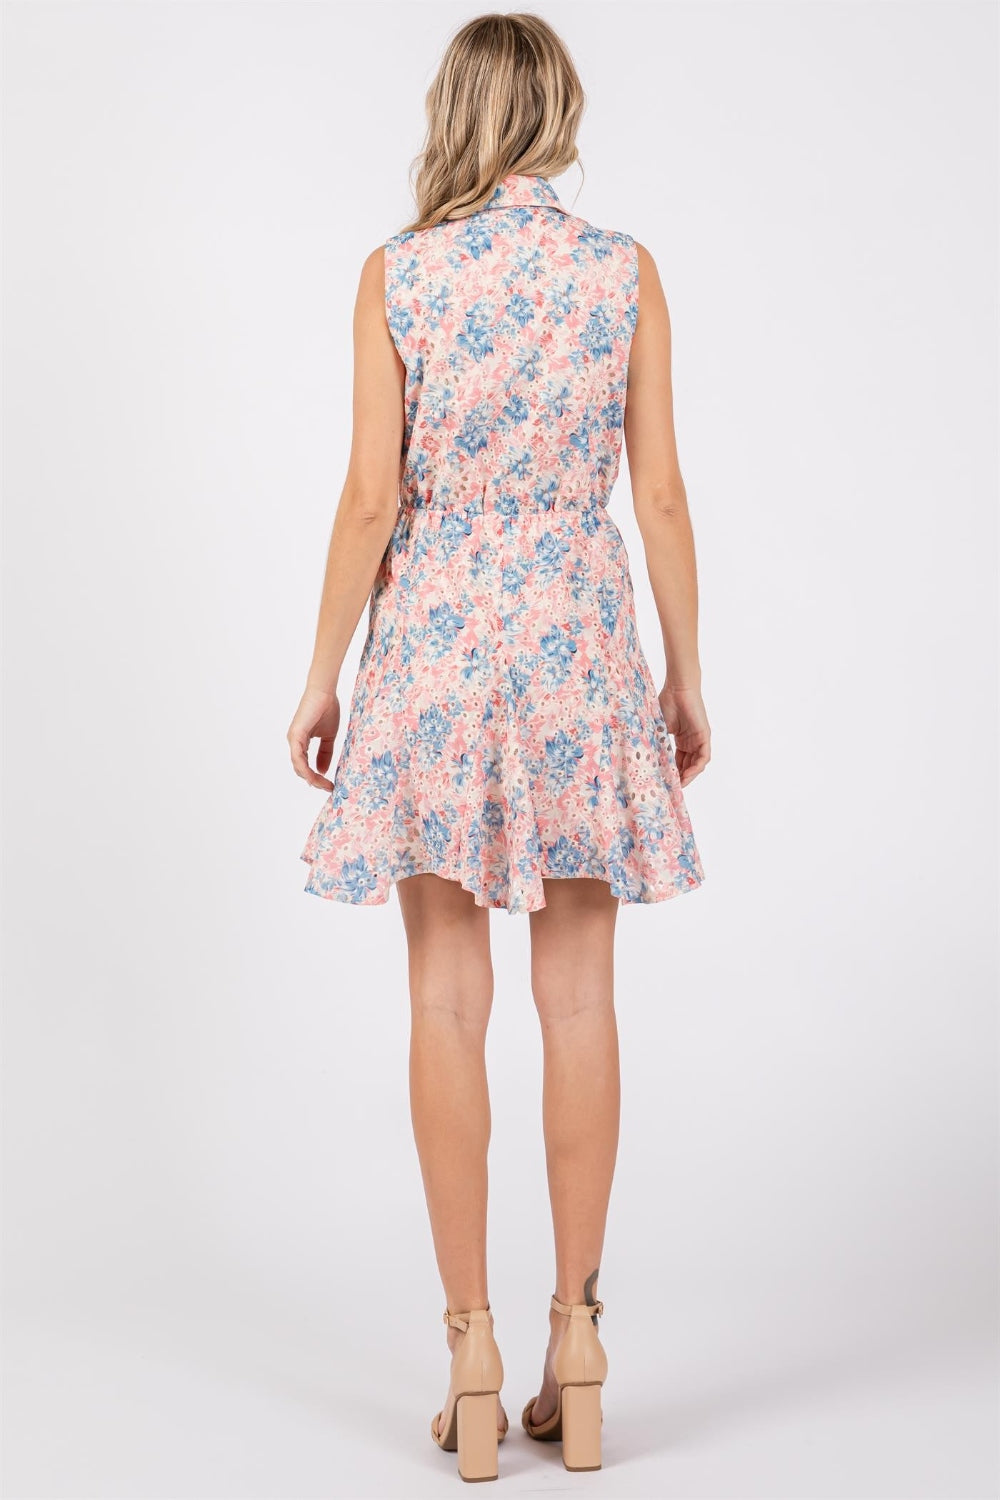 GeeGee Full Size Floral Eyelet Sleeveless Mini Dress  | KIKI COUTURE